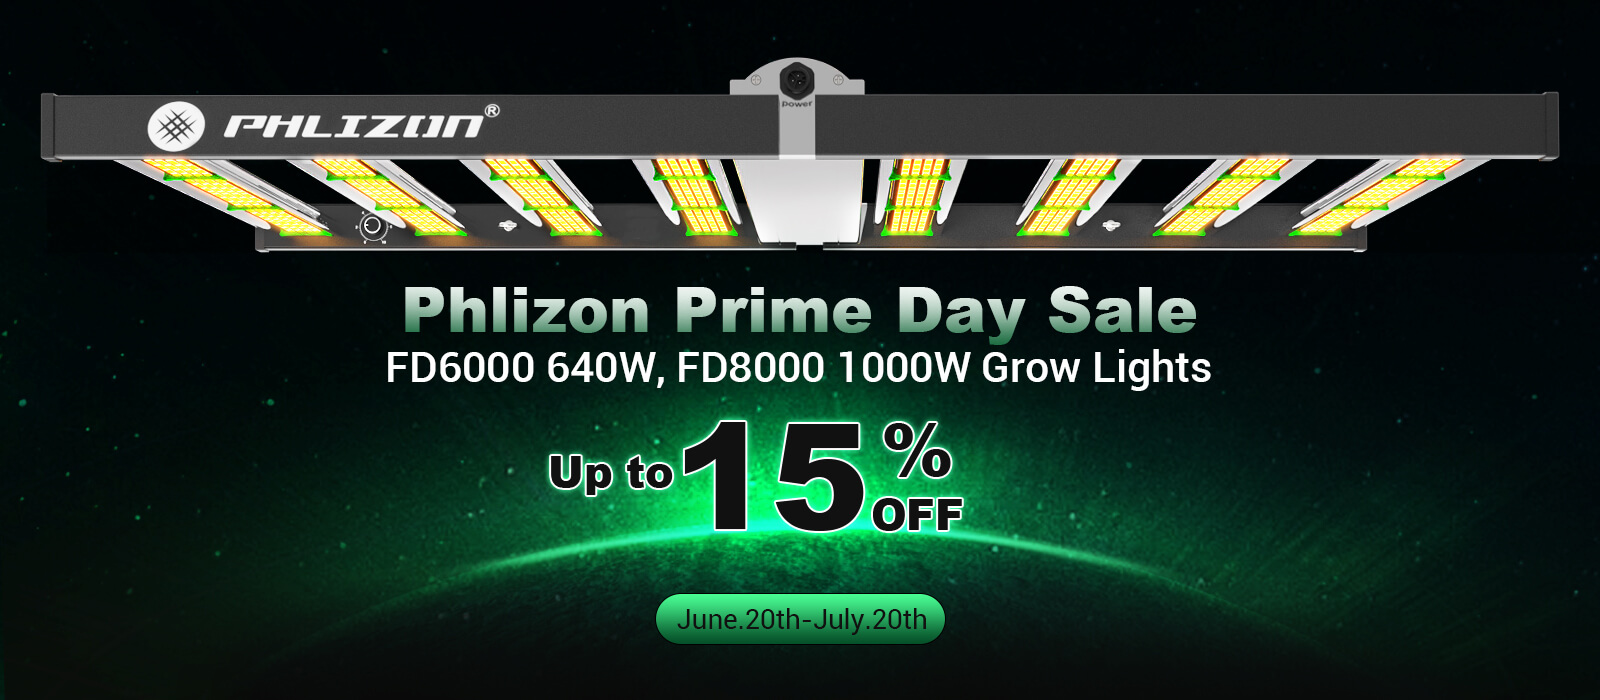 phlizon_prime_day_sale.jpg